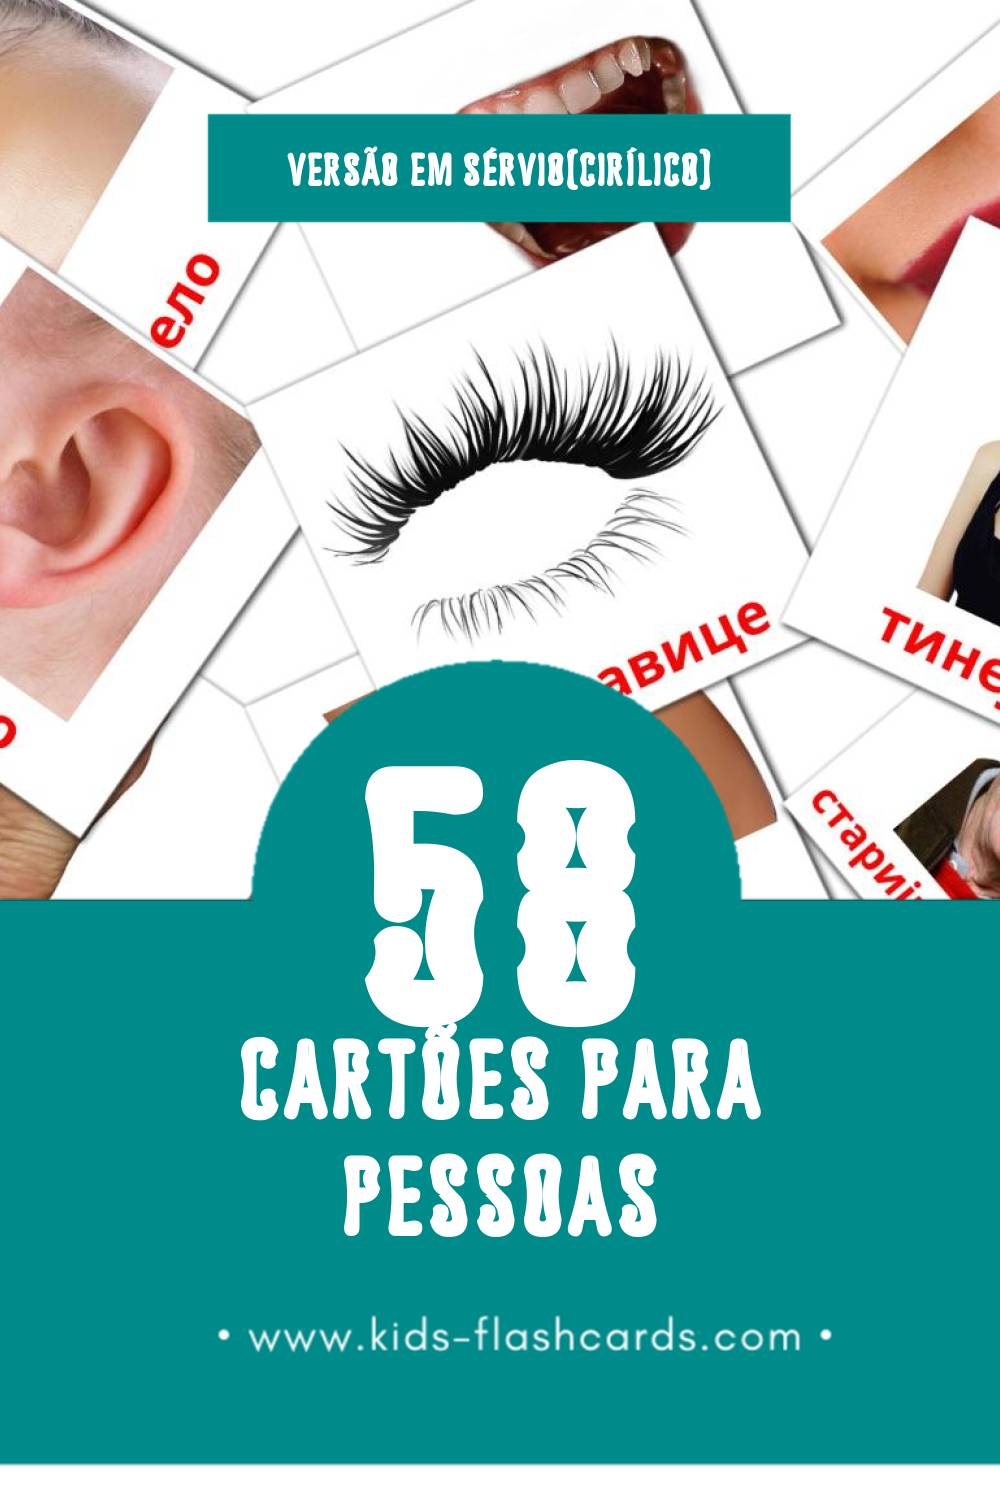 Flashcards de Људи Visuais para Toddlers (58 cartões em Sérvio(cirílico))